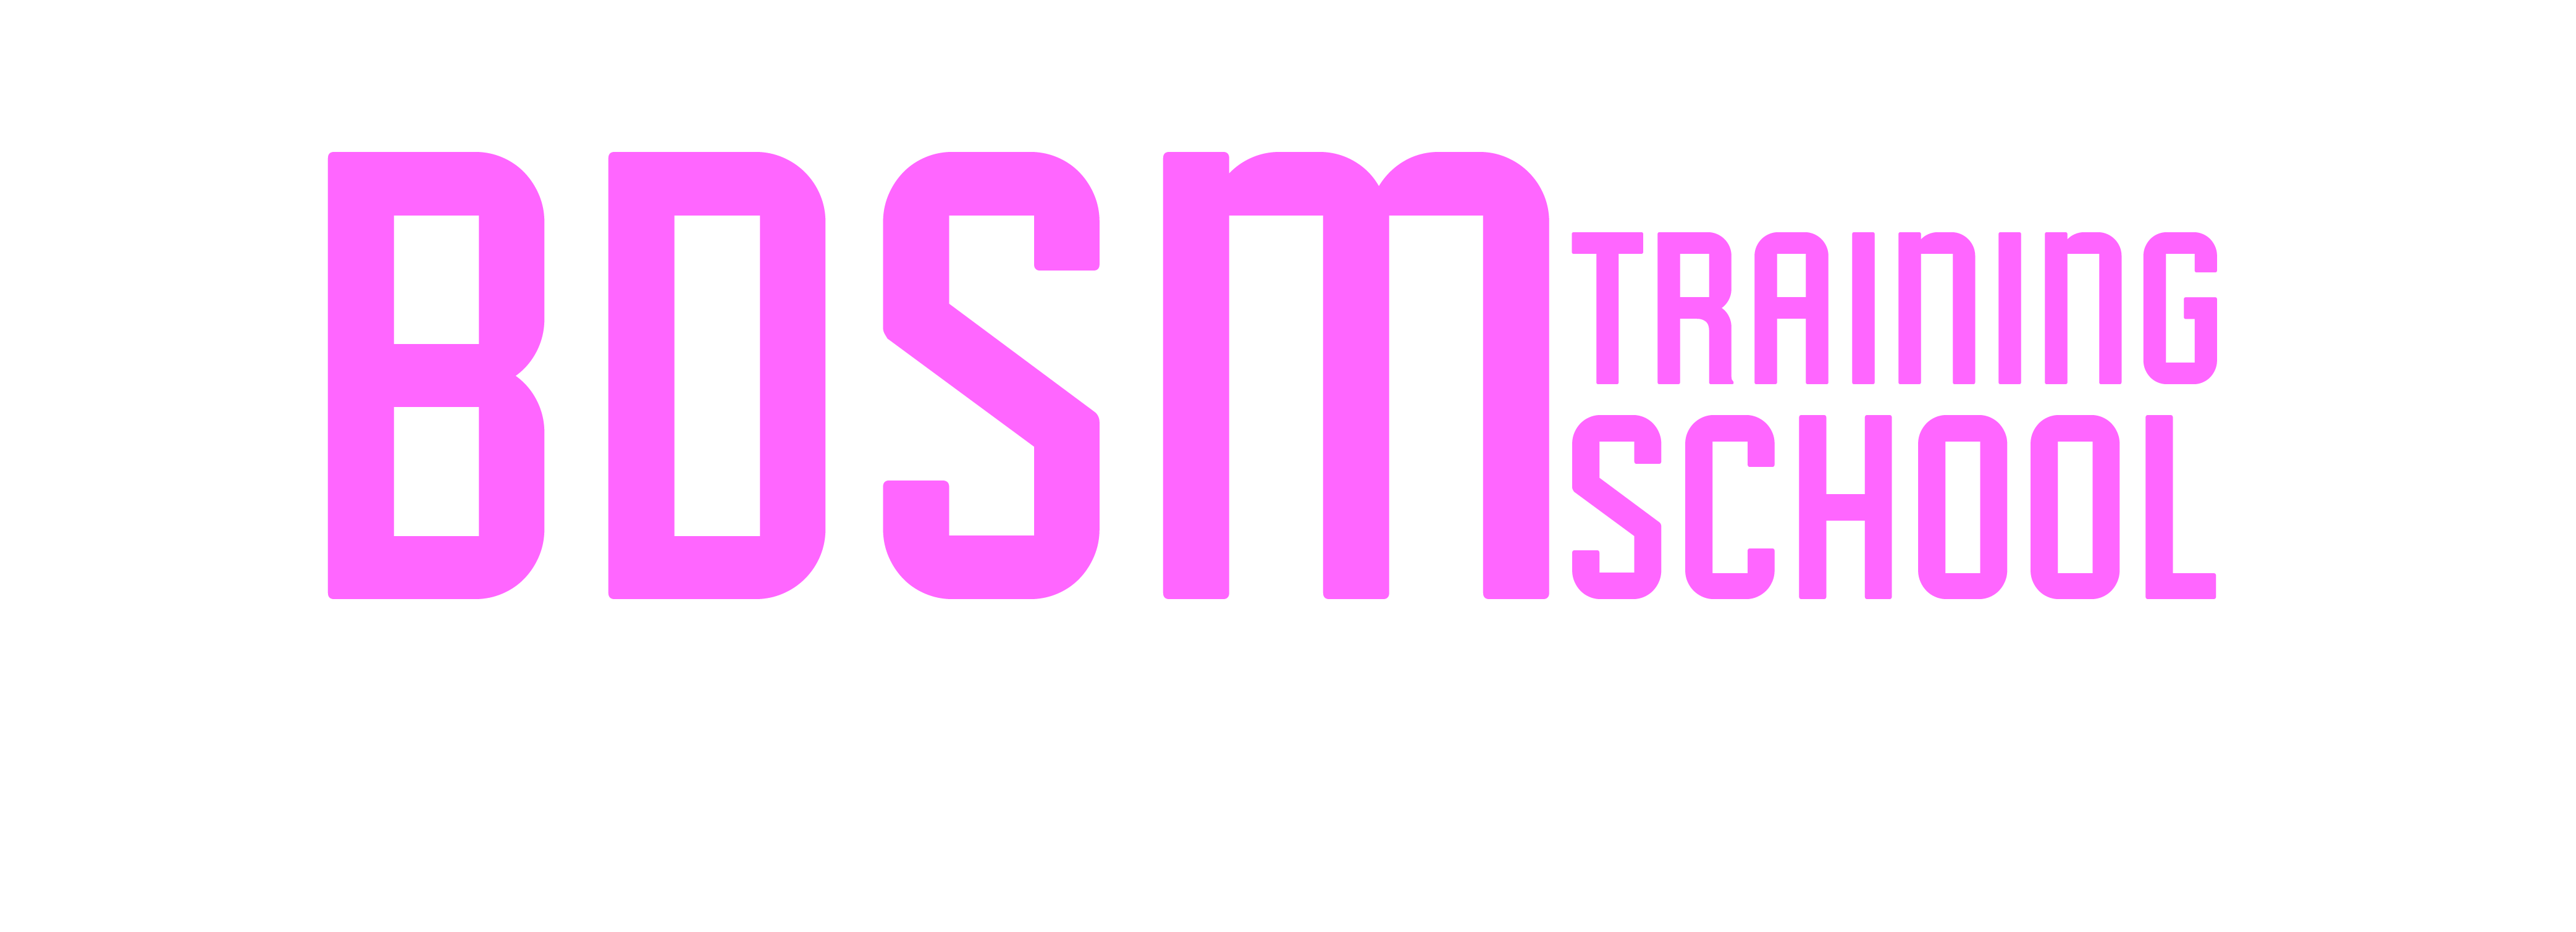 BDSM Training School by Fetish.com